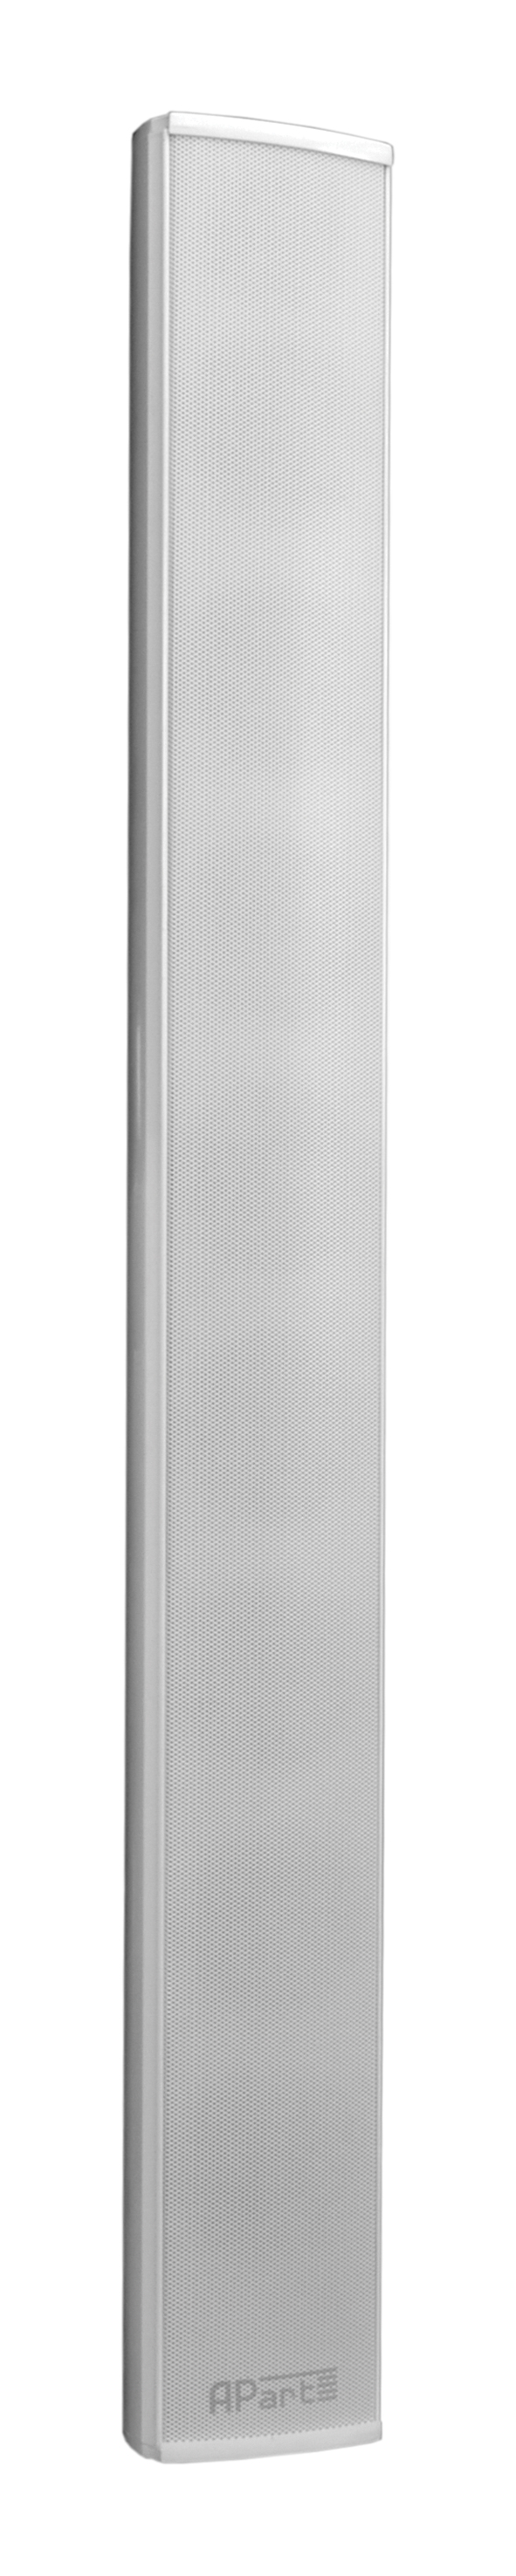 Biamp Desono COLW81 - 8 x 3,3 Klangsäulenlautsprecher 70-100 Volt weiß